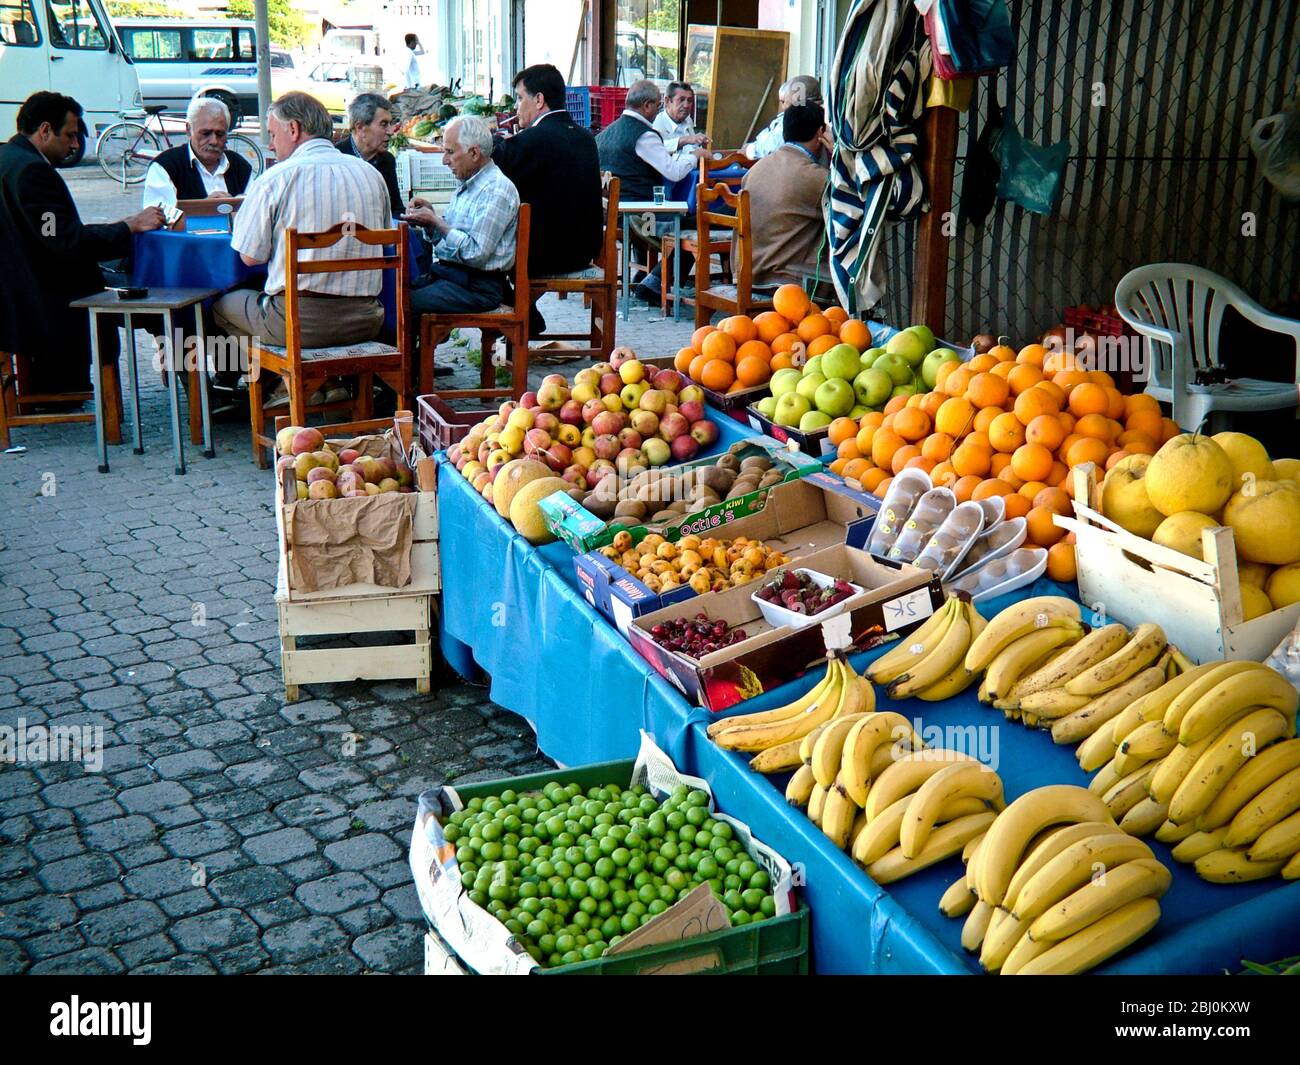 Fruits staller à l'extérieur du magasin avec des hommes jouant au jeu et boire du café en arrière-plan. Dalyan, Anatolie, Turquie - Banque D'Images